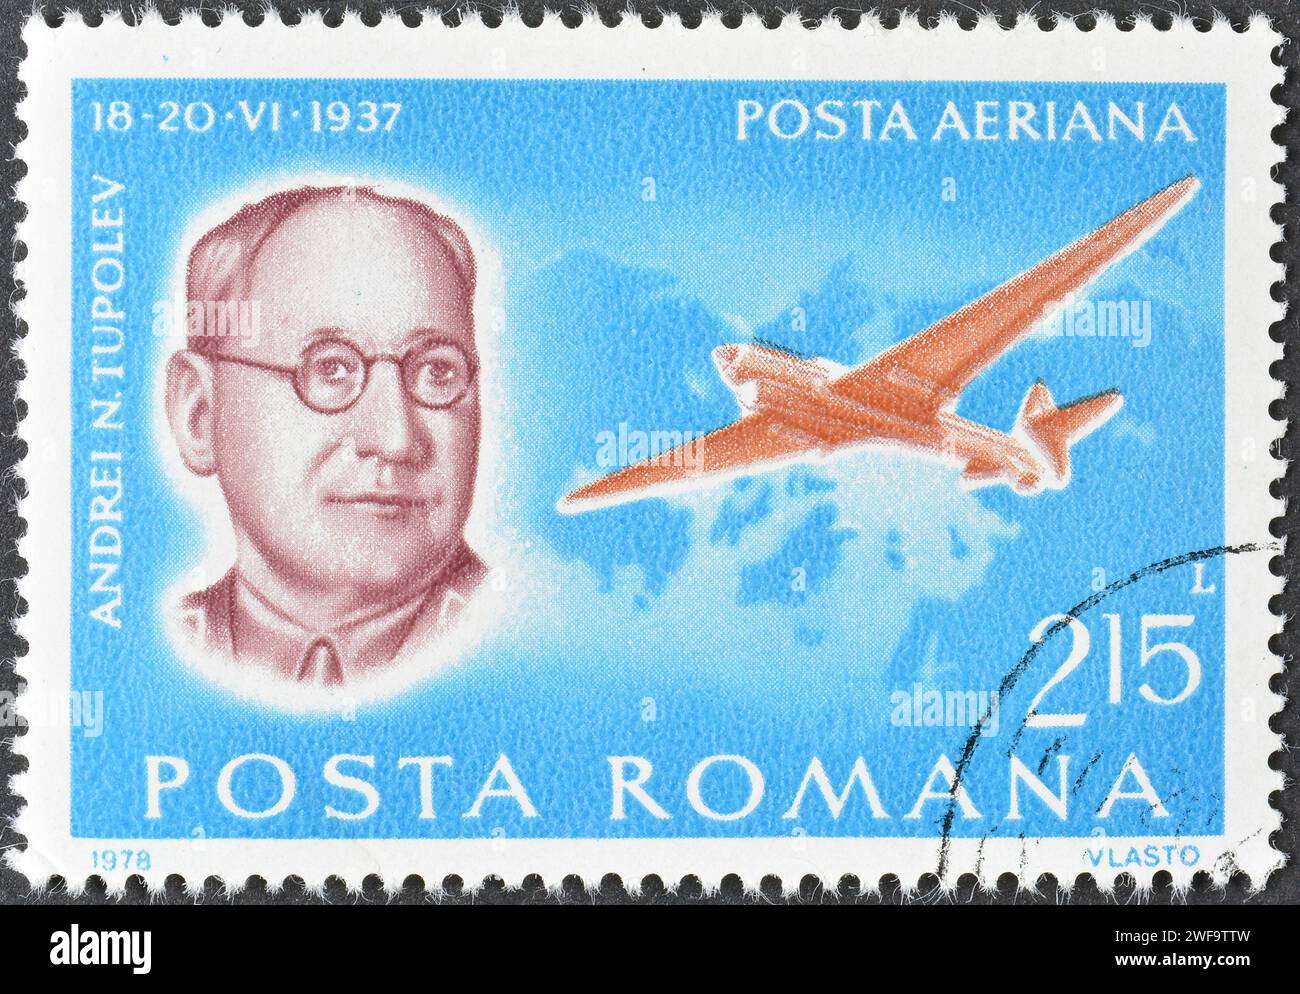 Gestempelte Briefmarke, gedruckt von Rumänien, auf der Andrej N. Tupolev (1937), Pioneers of Aviation, um 1978 zu sehen ist. Stockfoto